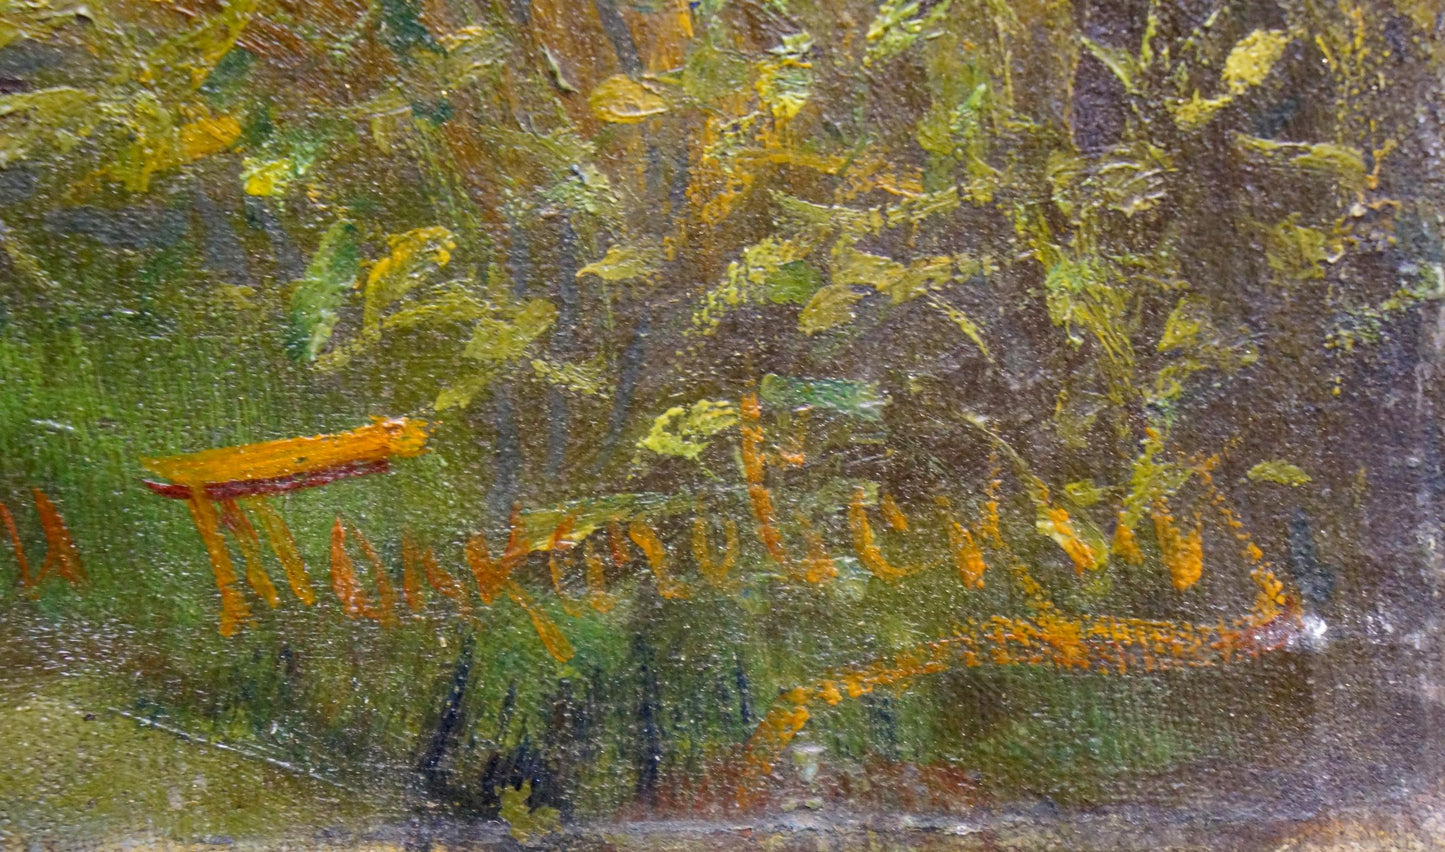 Oil painting Field landscape Tolkachevsky I.